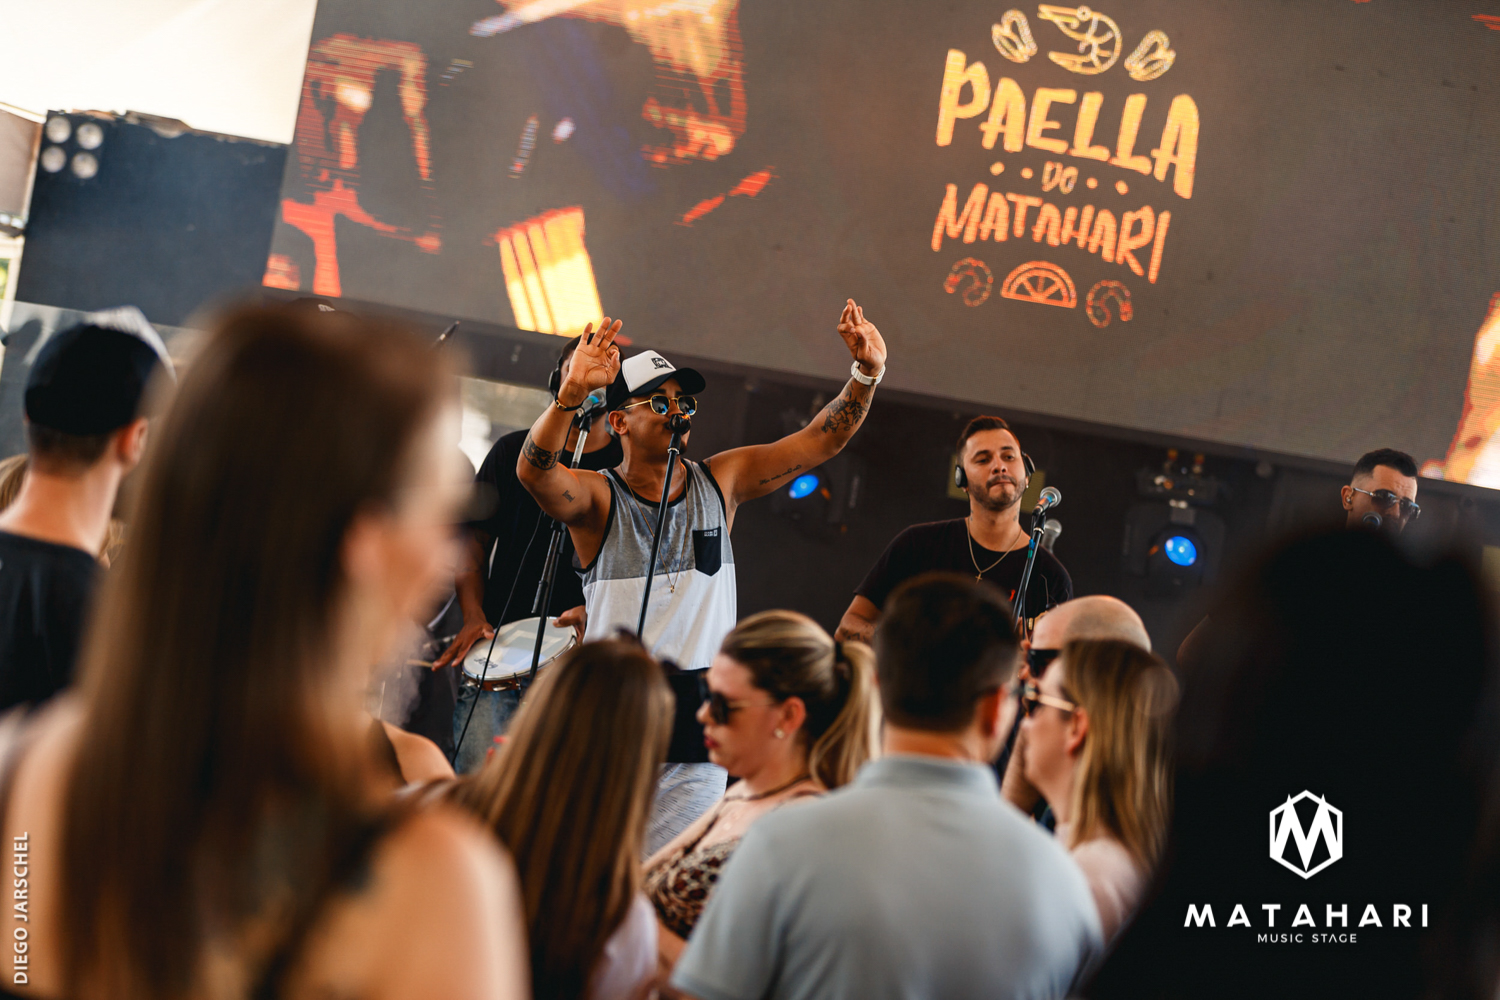 Paella do Matahari 2019